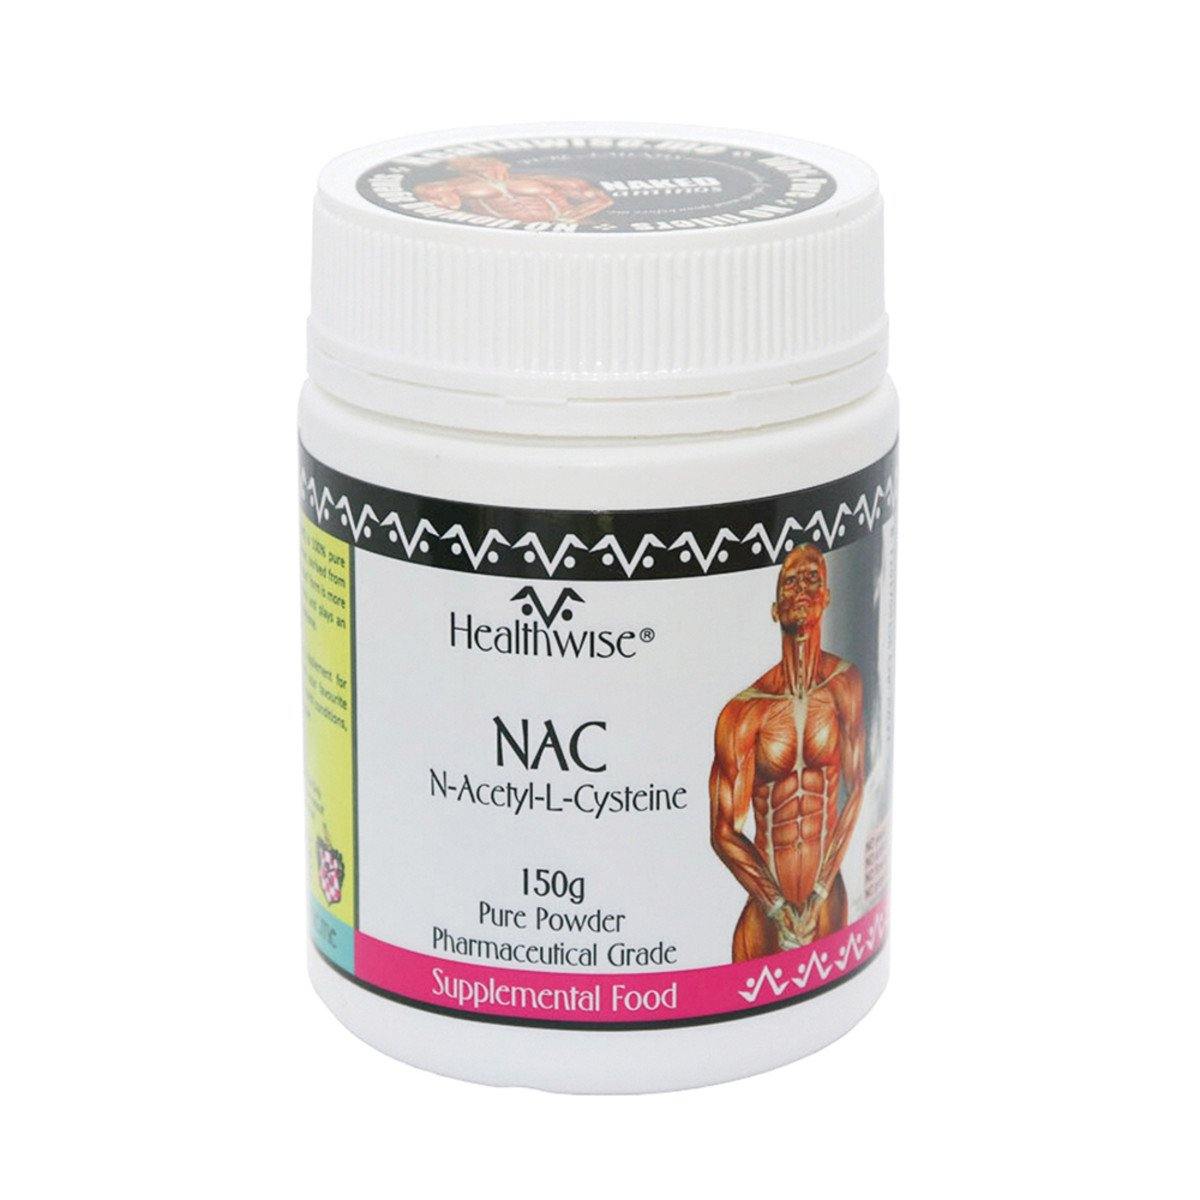 Healthwise NAC (N-Acetyl-L-Cysteine) 150g Powder - QVM Vitamins™